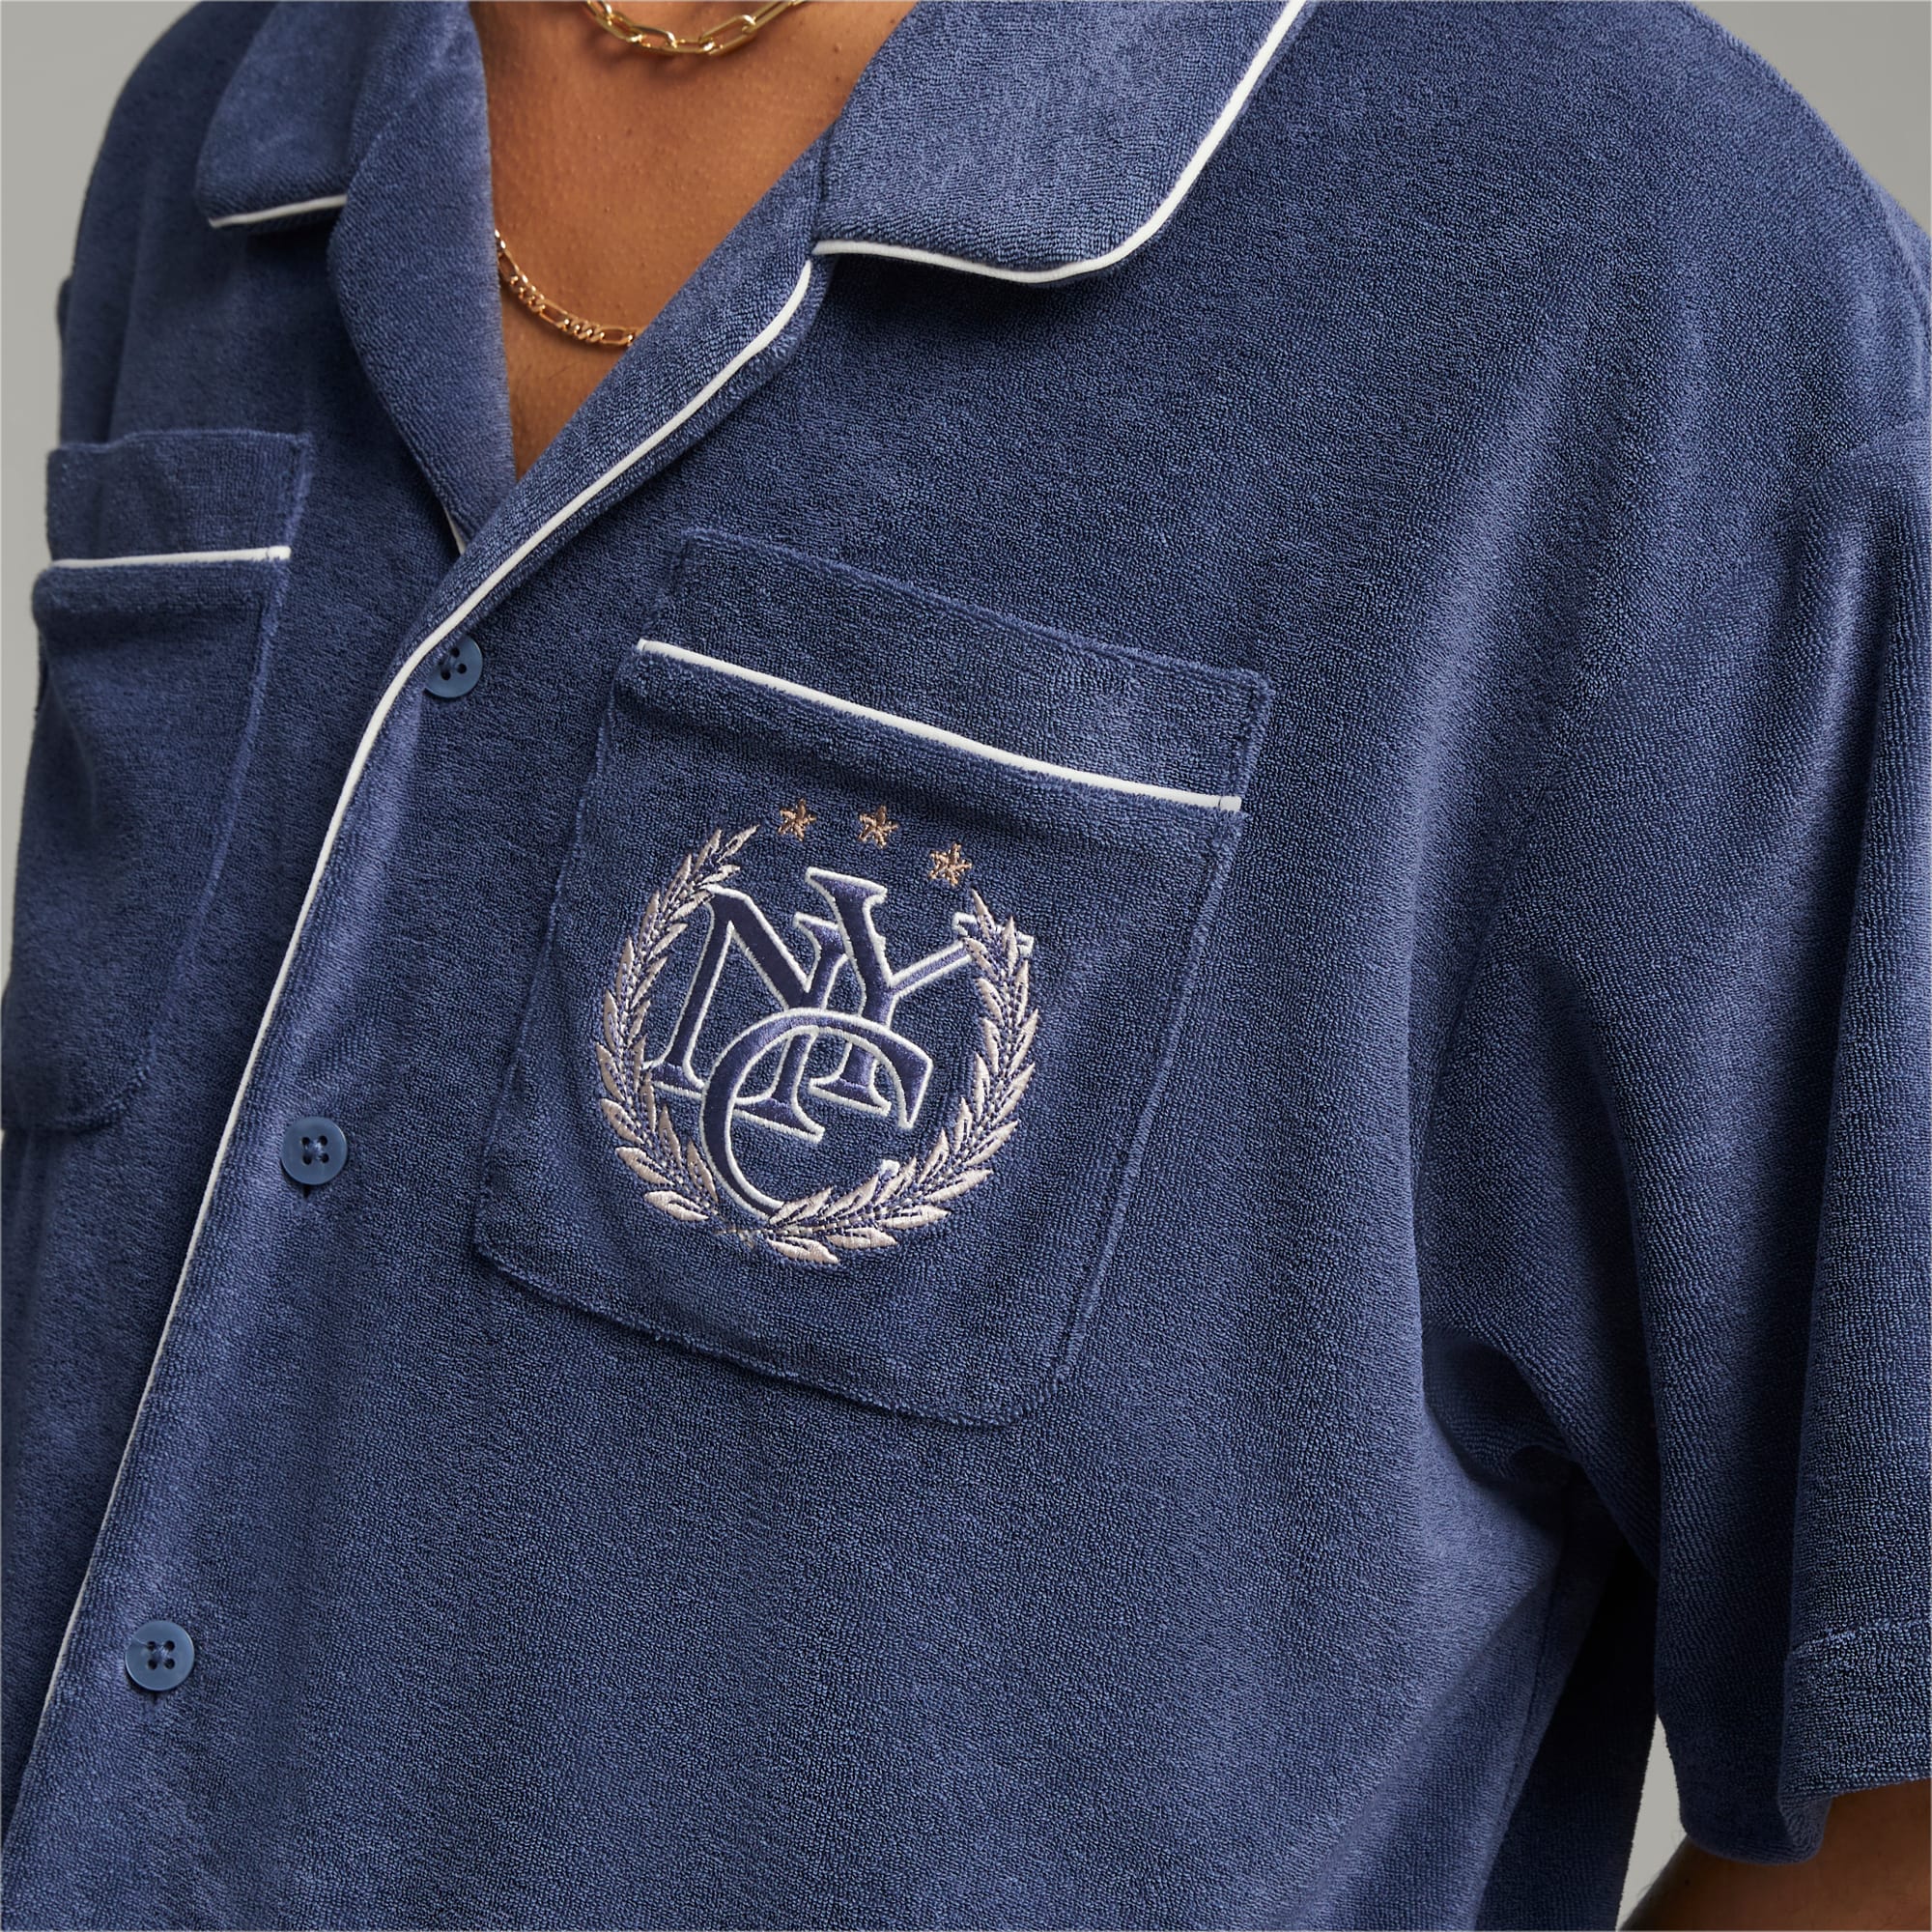 PUMA X RHUIGI Shirt Für Herren, Blau, Größe: S, Kleidung